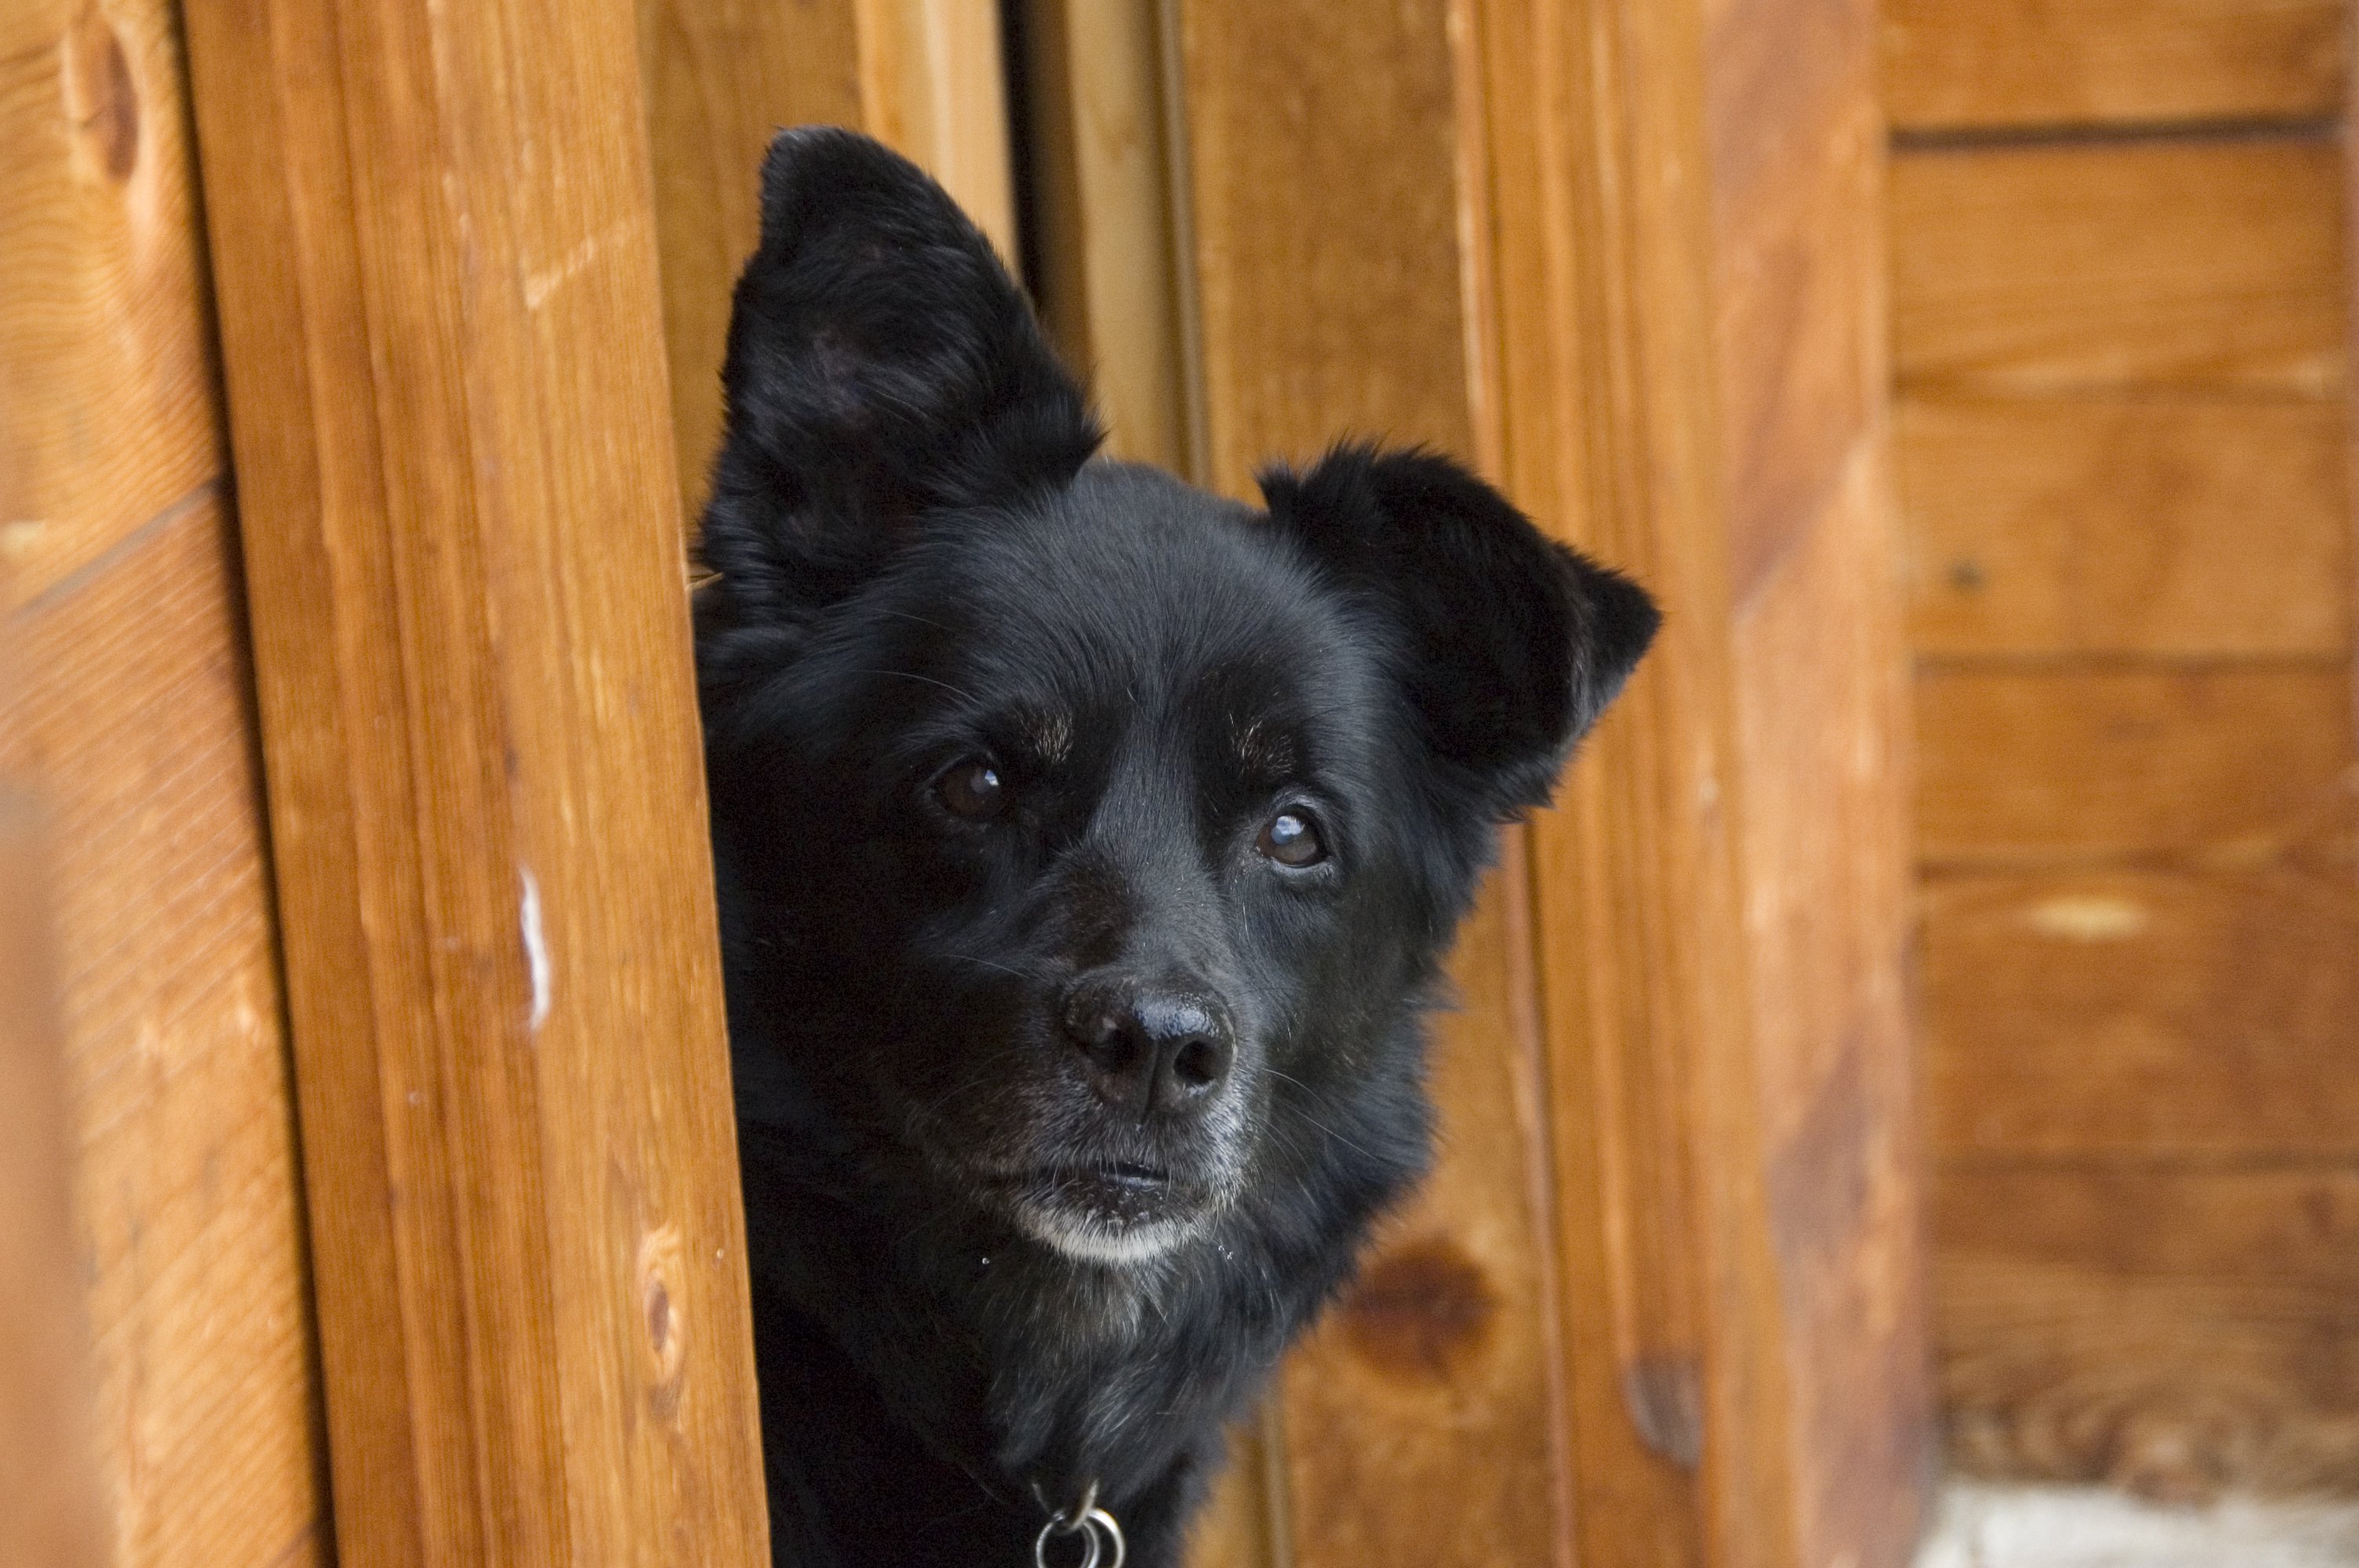 Perros encadenados: Animales descuidados y sin escapatoria | Blog | PETA Latino